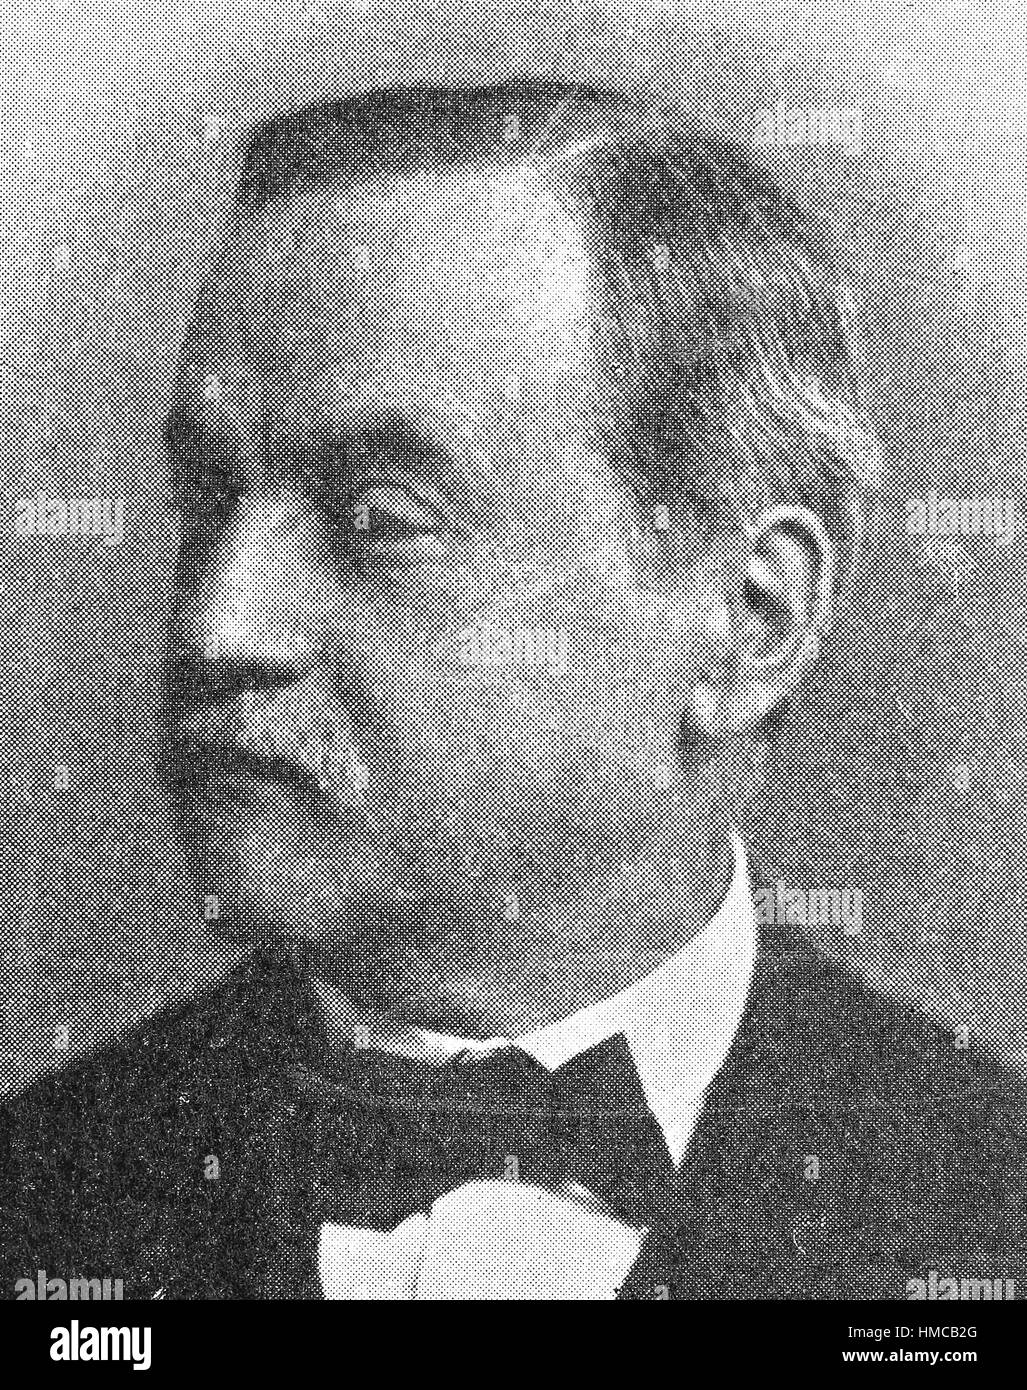 Ernst Ludwig Duemmler, 2. Januar 1830 - 11. September 1902, war ein deutscher Historiker, Foto oder Illustration, veröffentlicht 1892, digital verbessert Stockfoto